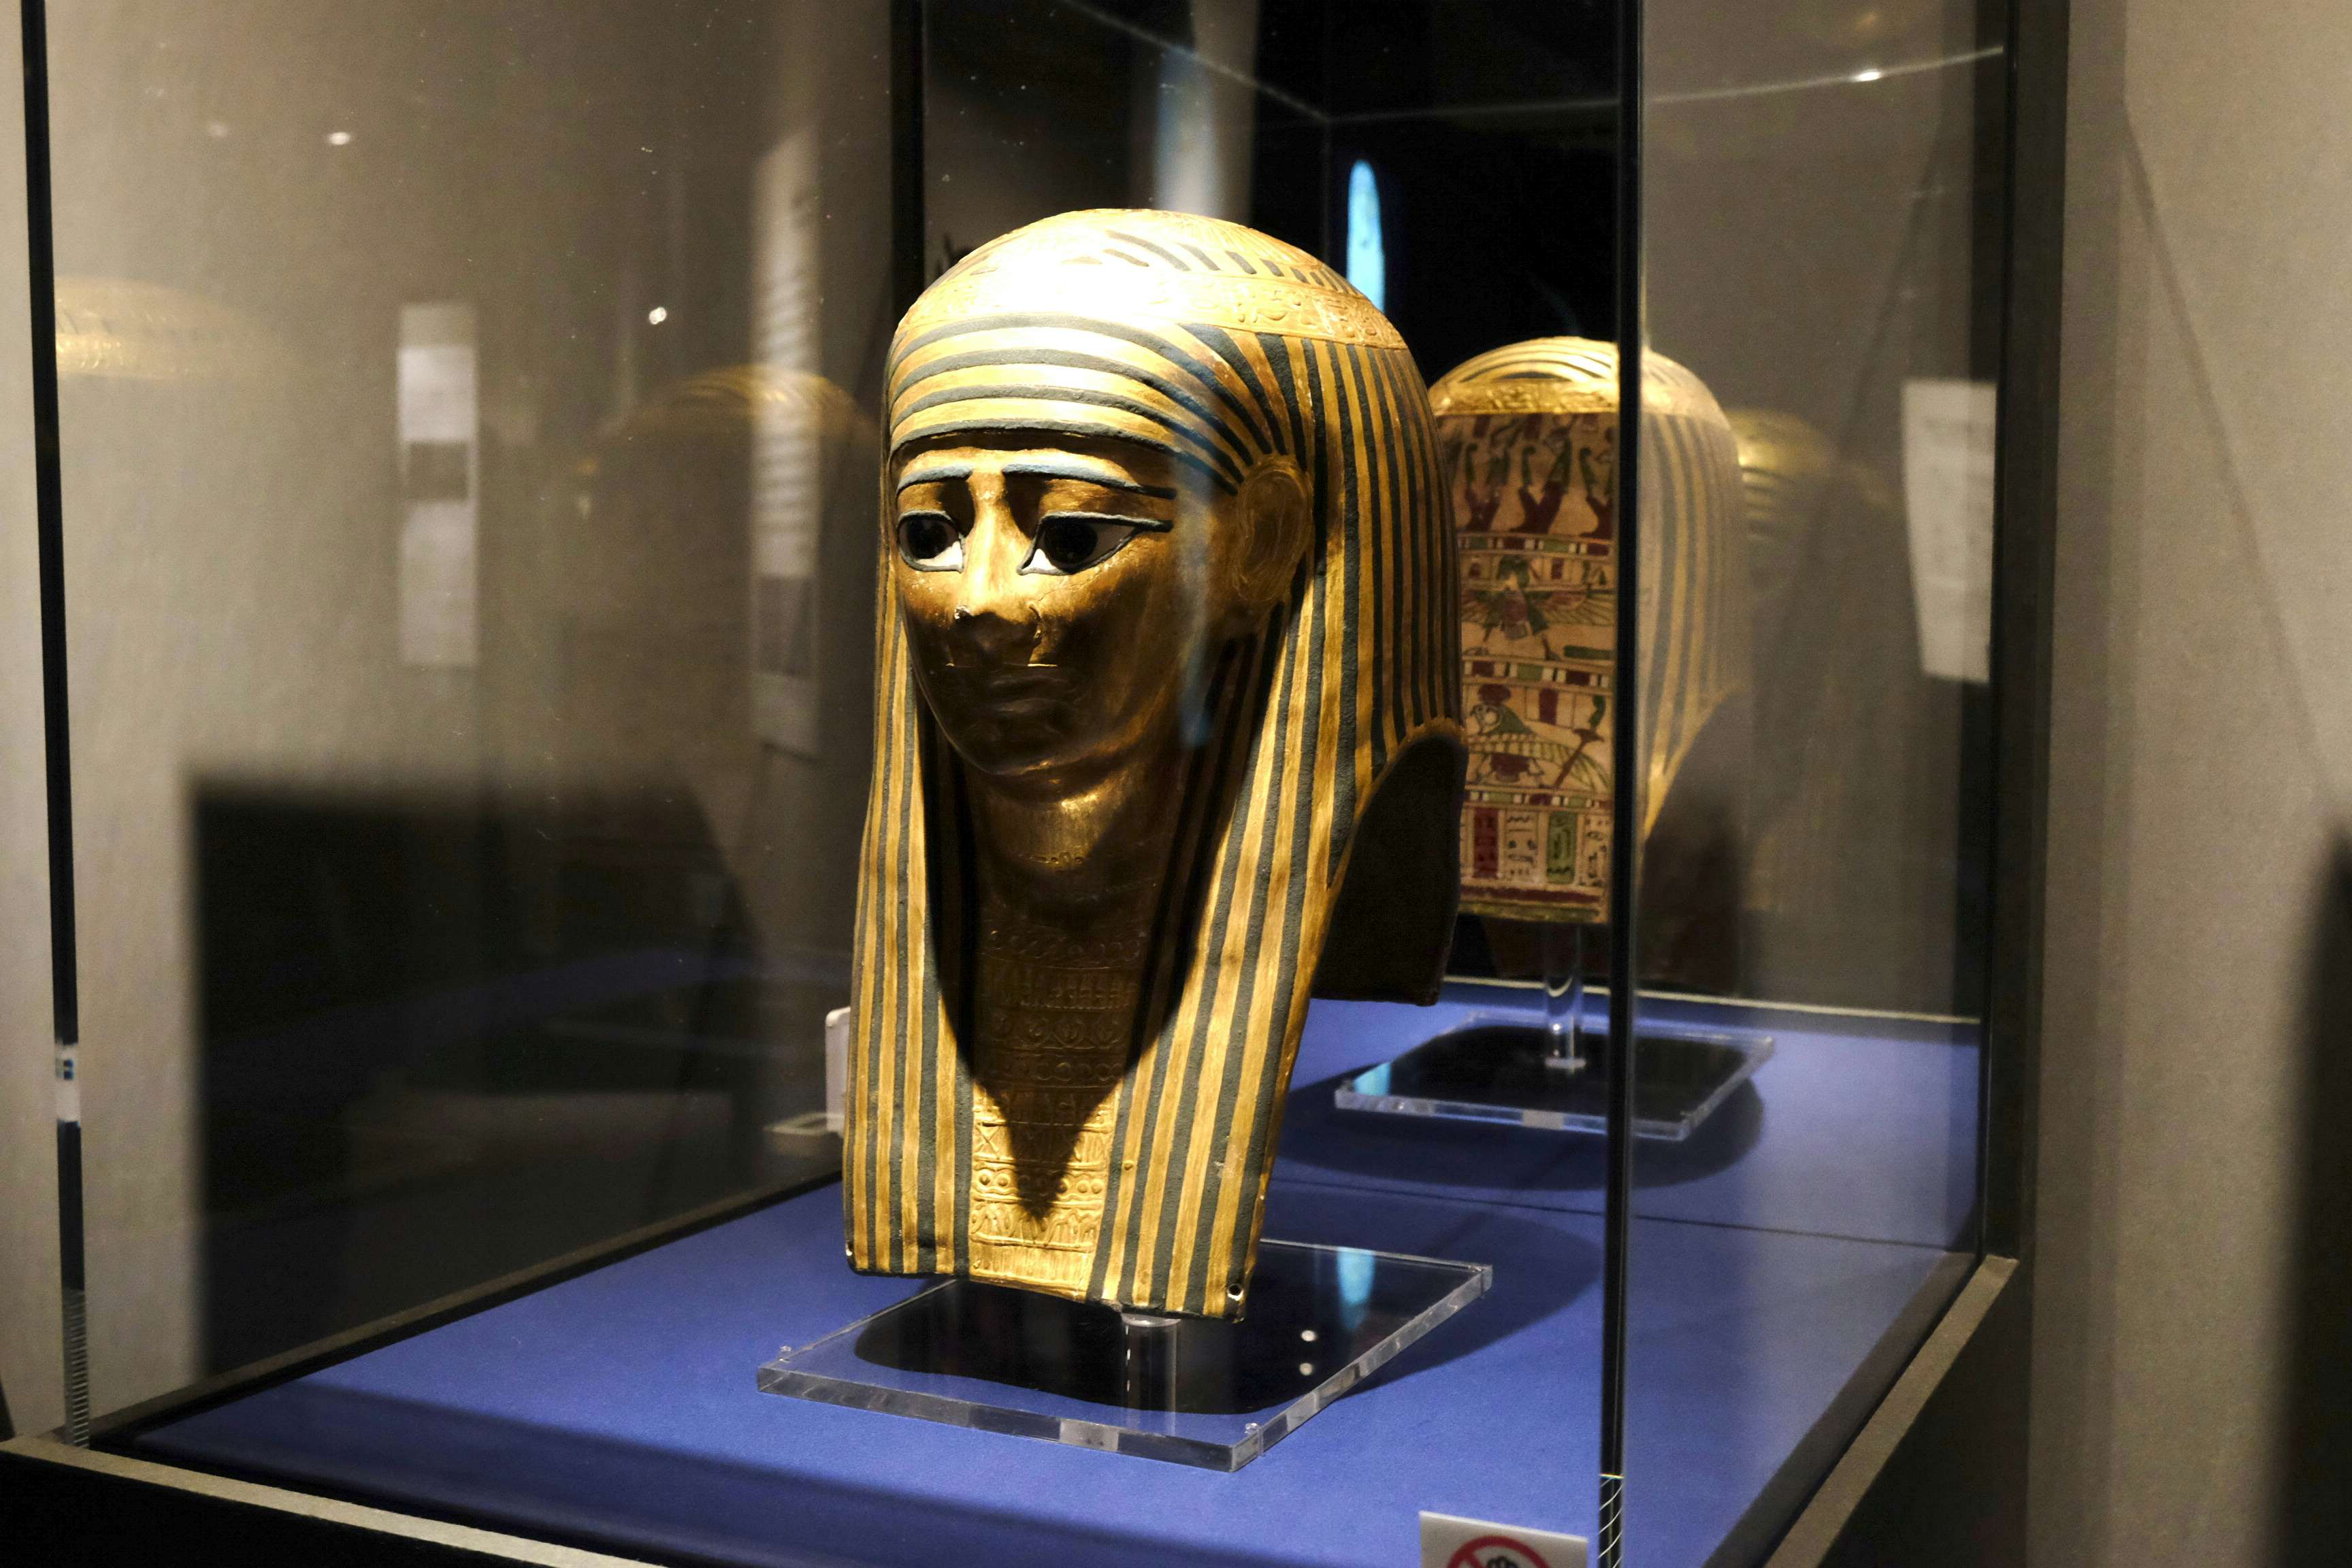 6体のミイラをctスキャンで解析 古代エジプト人の生き様を知る 大英博物館ミイラ展 古代エジプト6つの物語 が開幕 画像ギャラリー 35 美術手帖